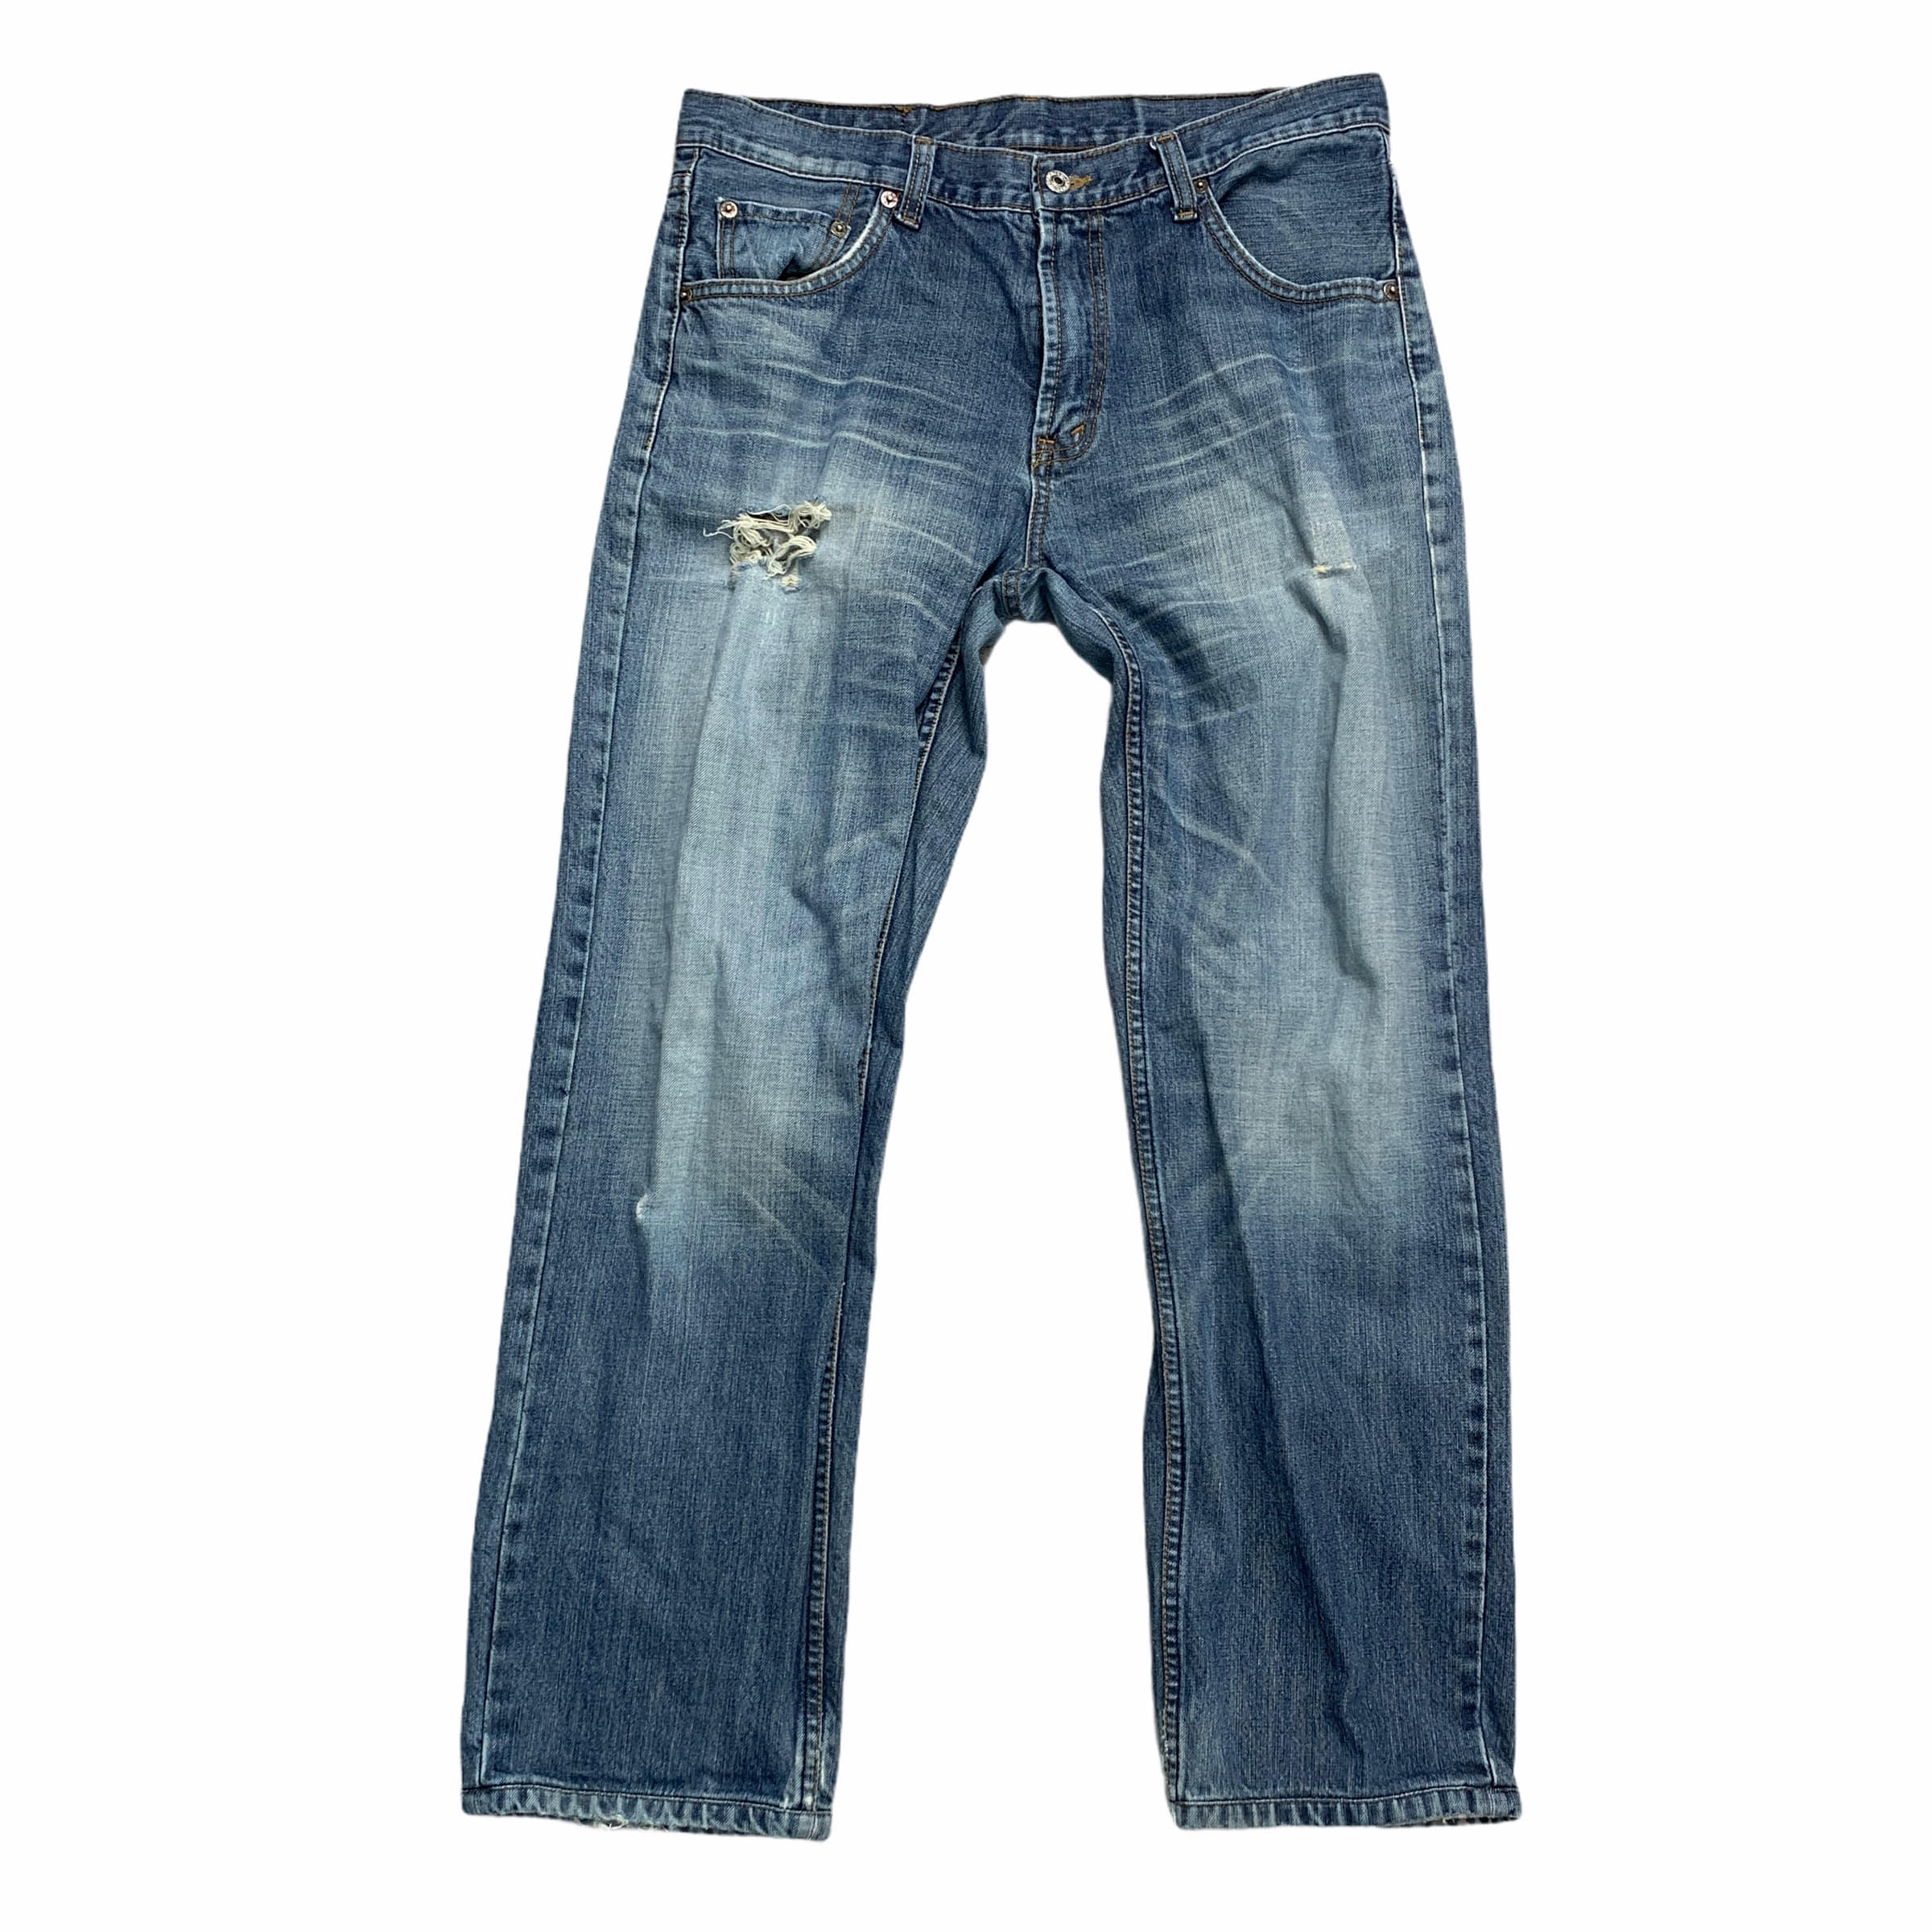 [Levis] (Vintage) 501 Denim pants - Size 32/32